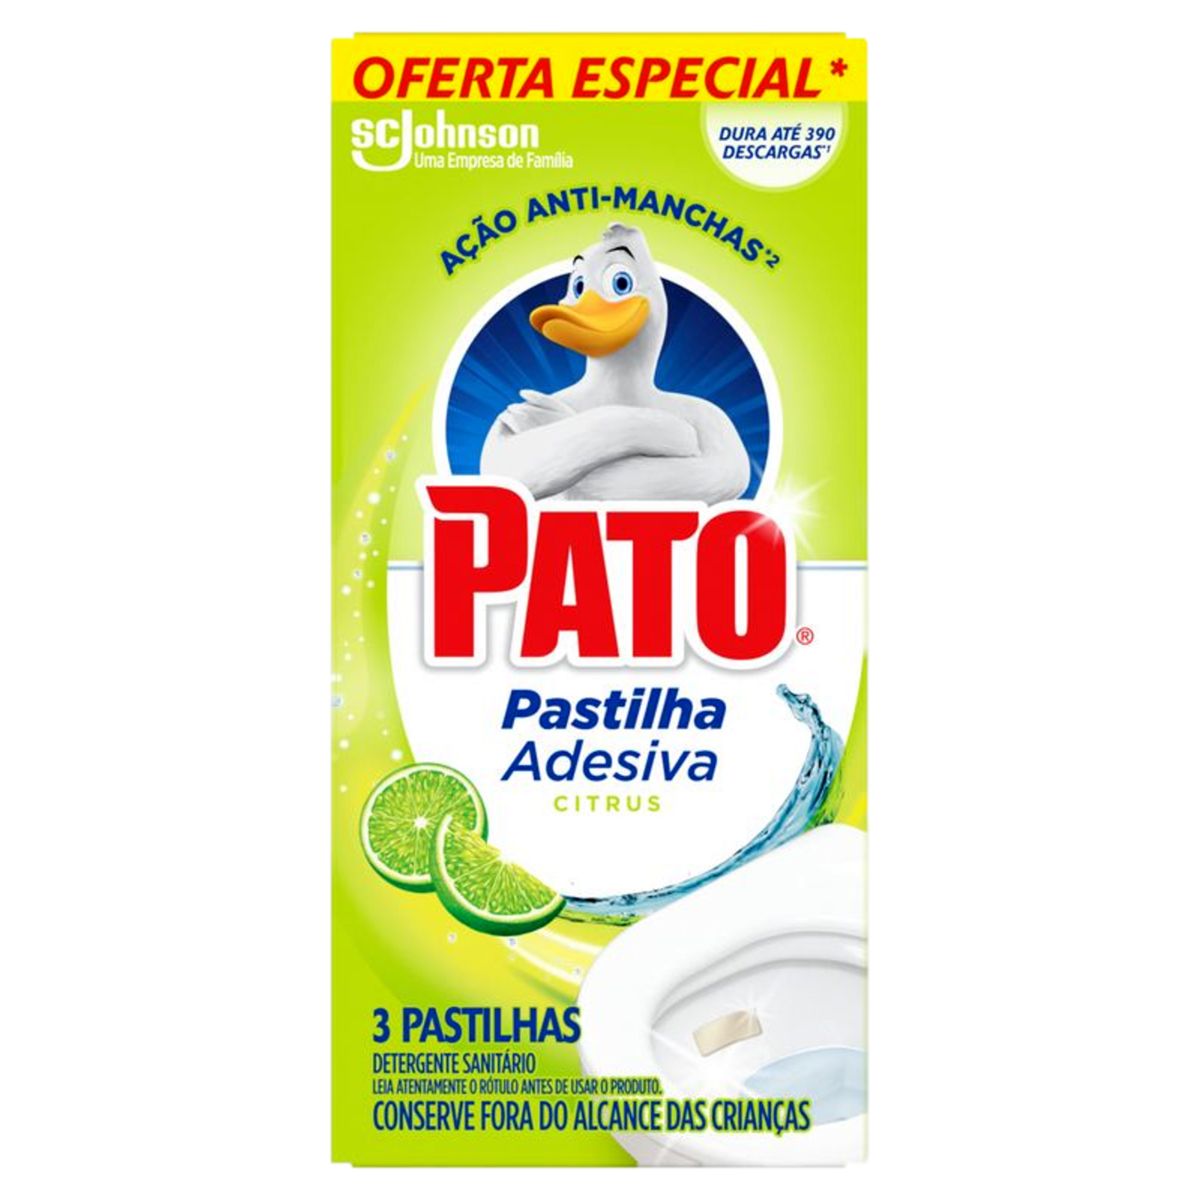 Detergente Sanitário Pato Pastilha Adesiva Citrus 3 Unidades